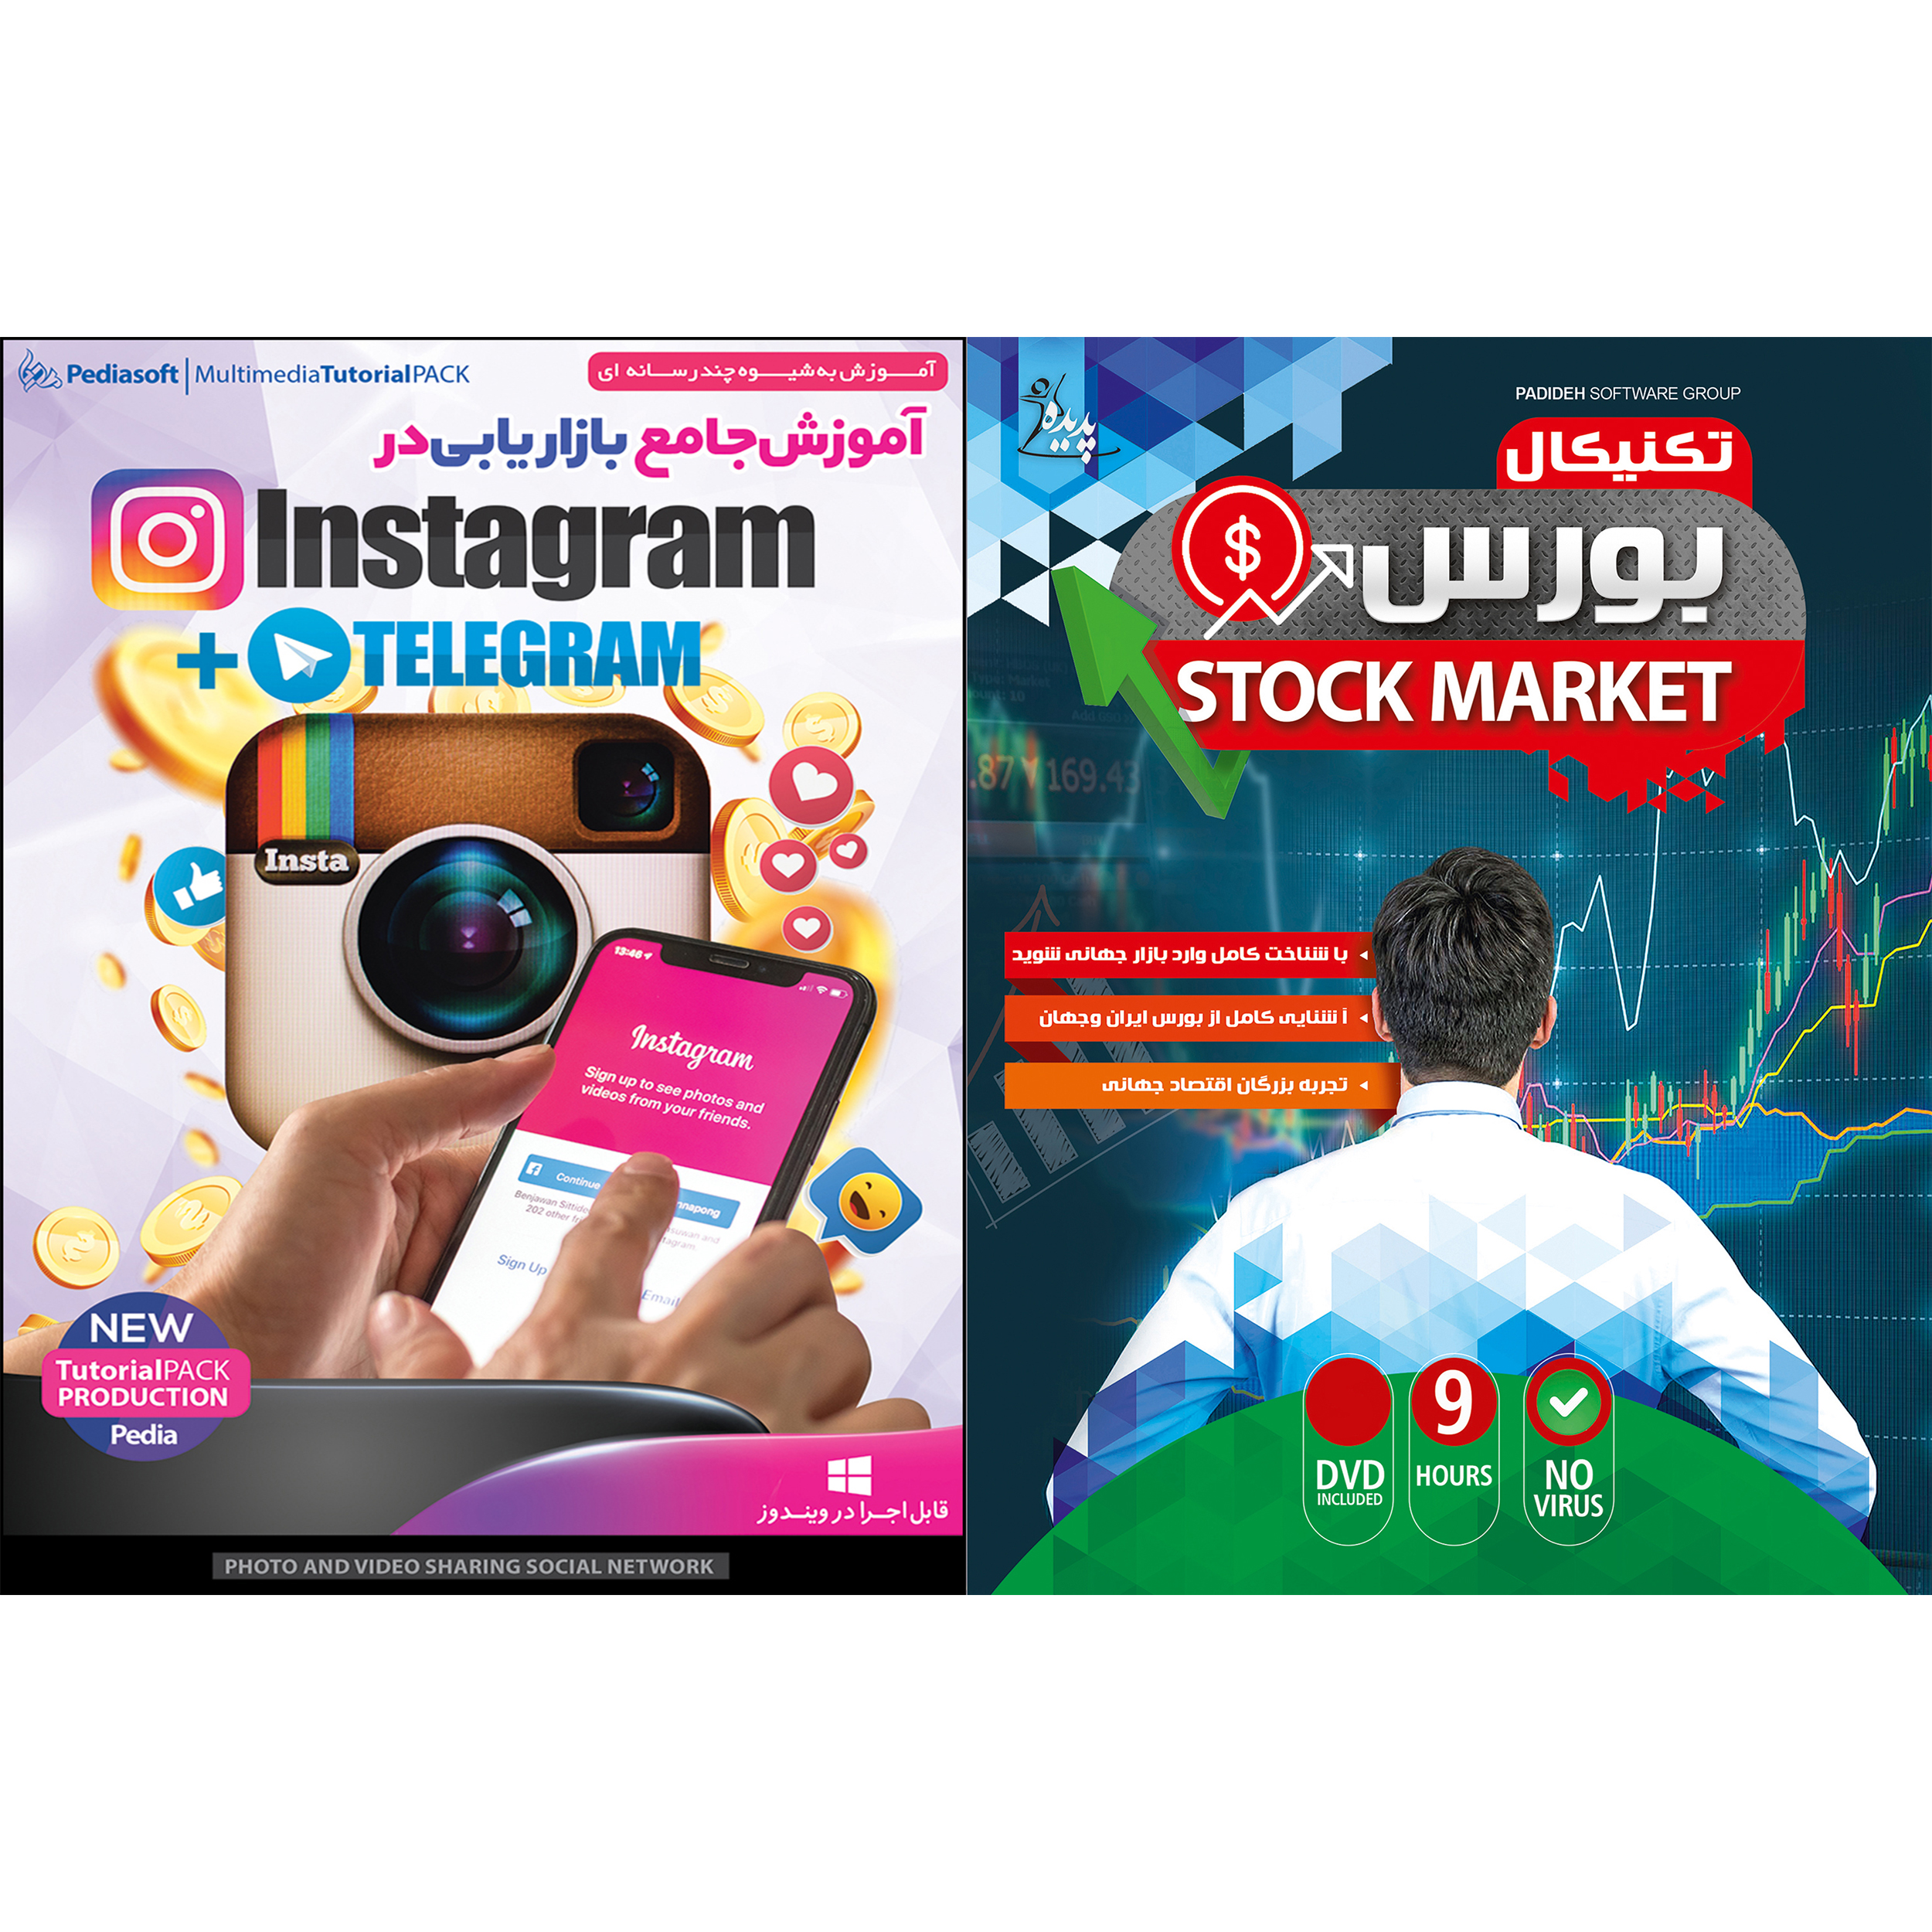 نرم افزار آموزش تکنیکال بورس نشر پدیا سافت به همراه نرم افزار آموزش جامع بازاریابی در Instagram + Telegram نشر پدیا سافت